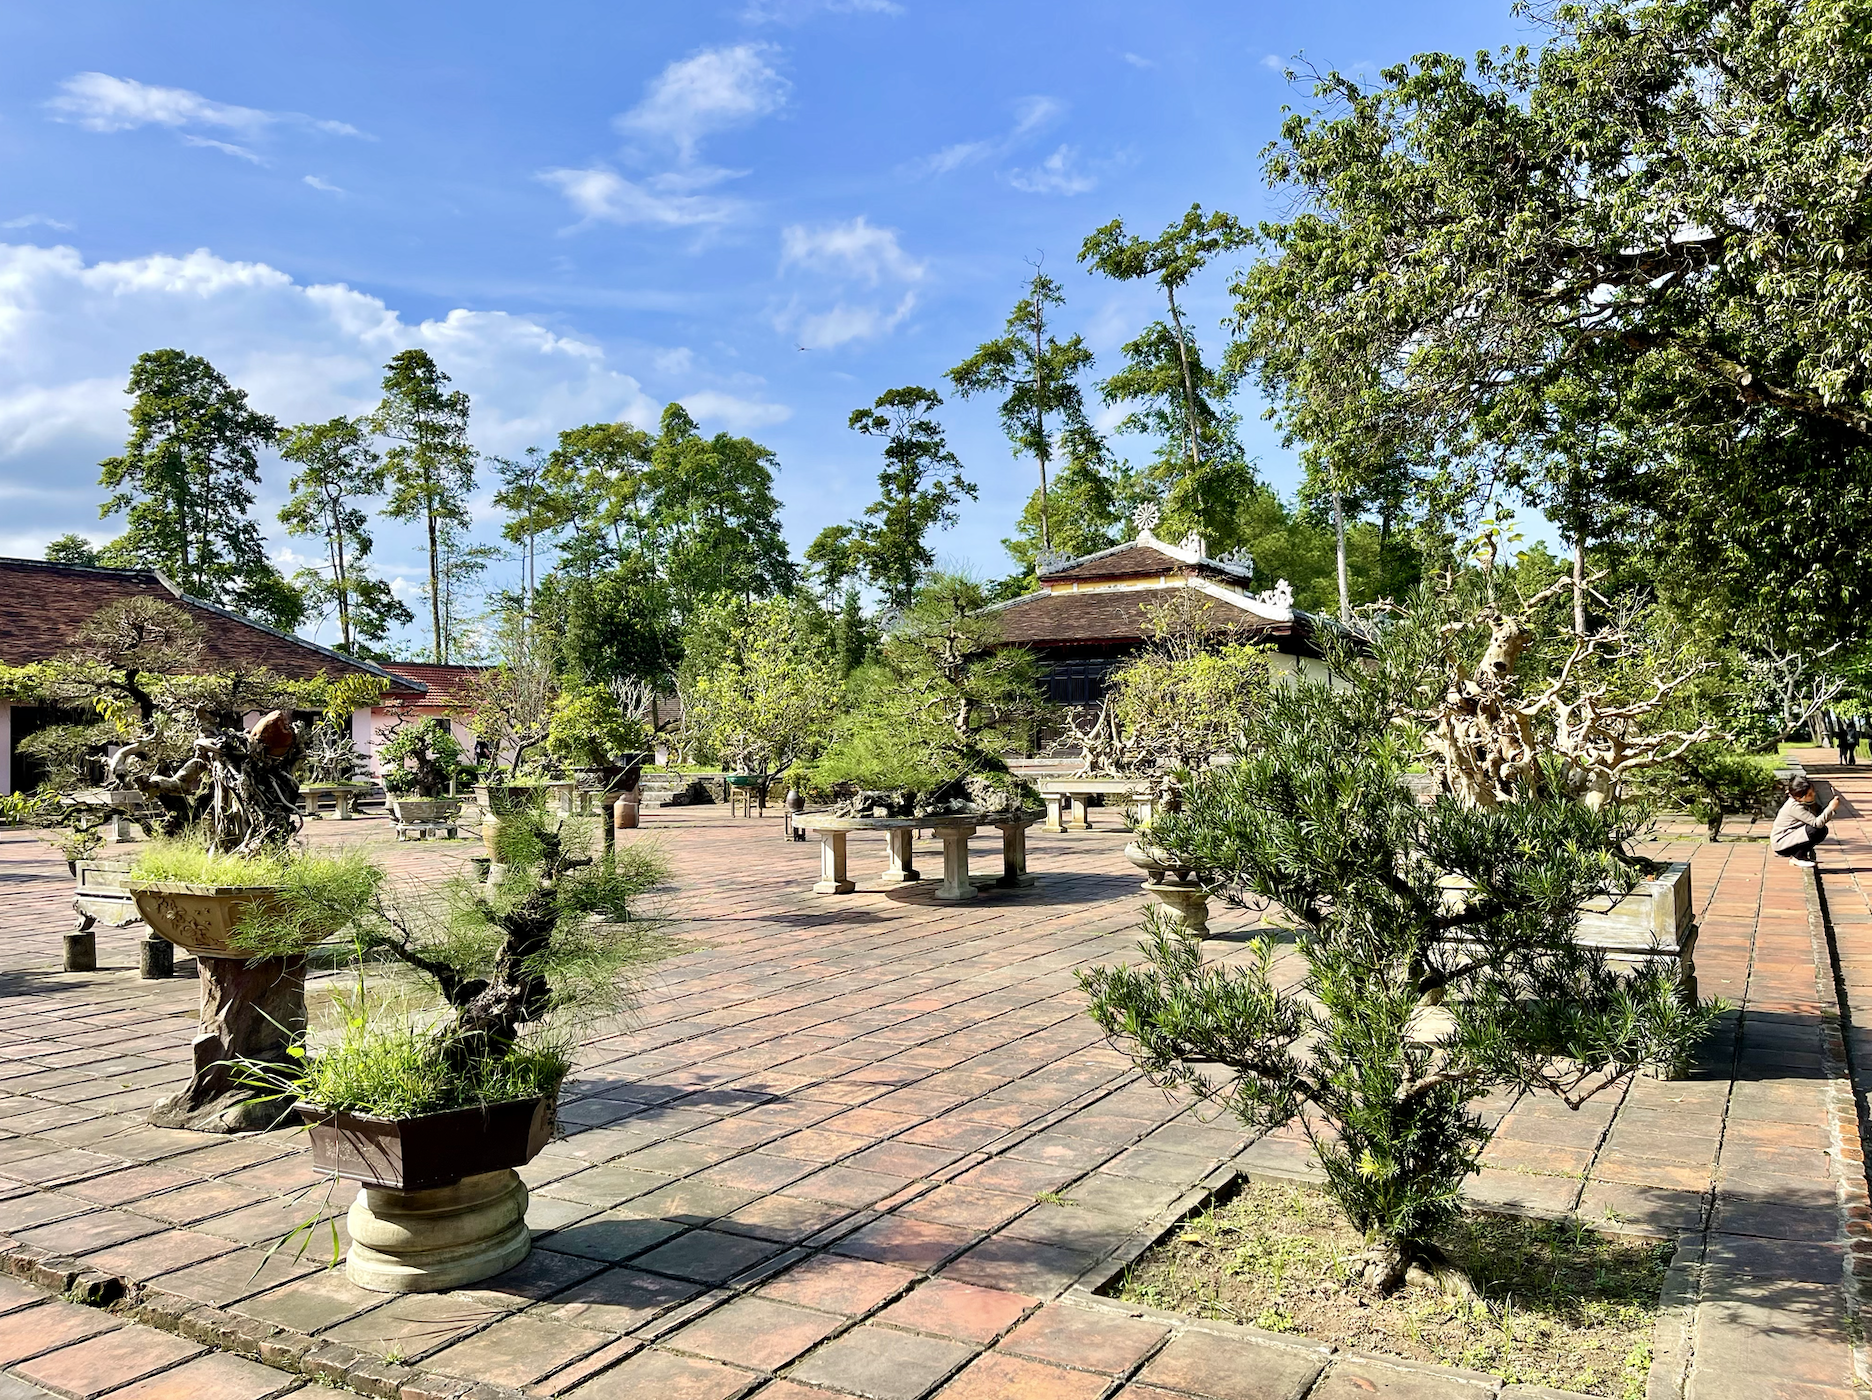 Thien Mu Pagoda-Things to do in Hue, Vietnam